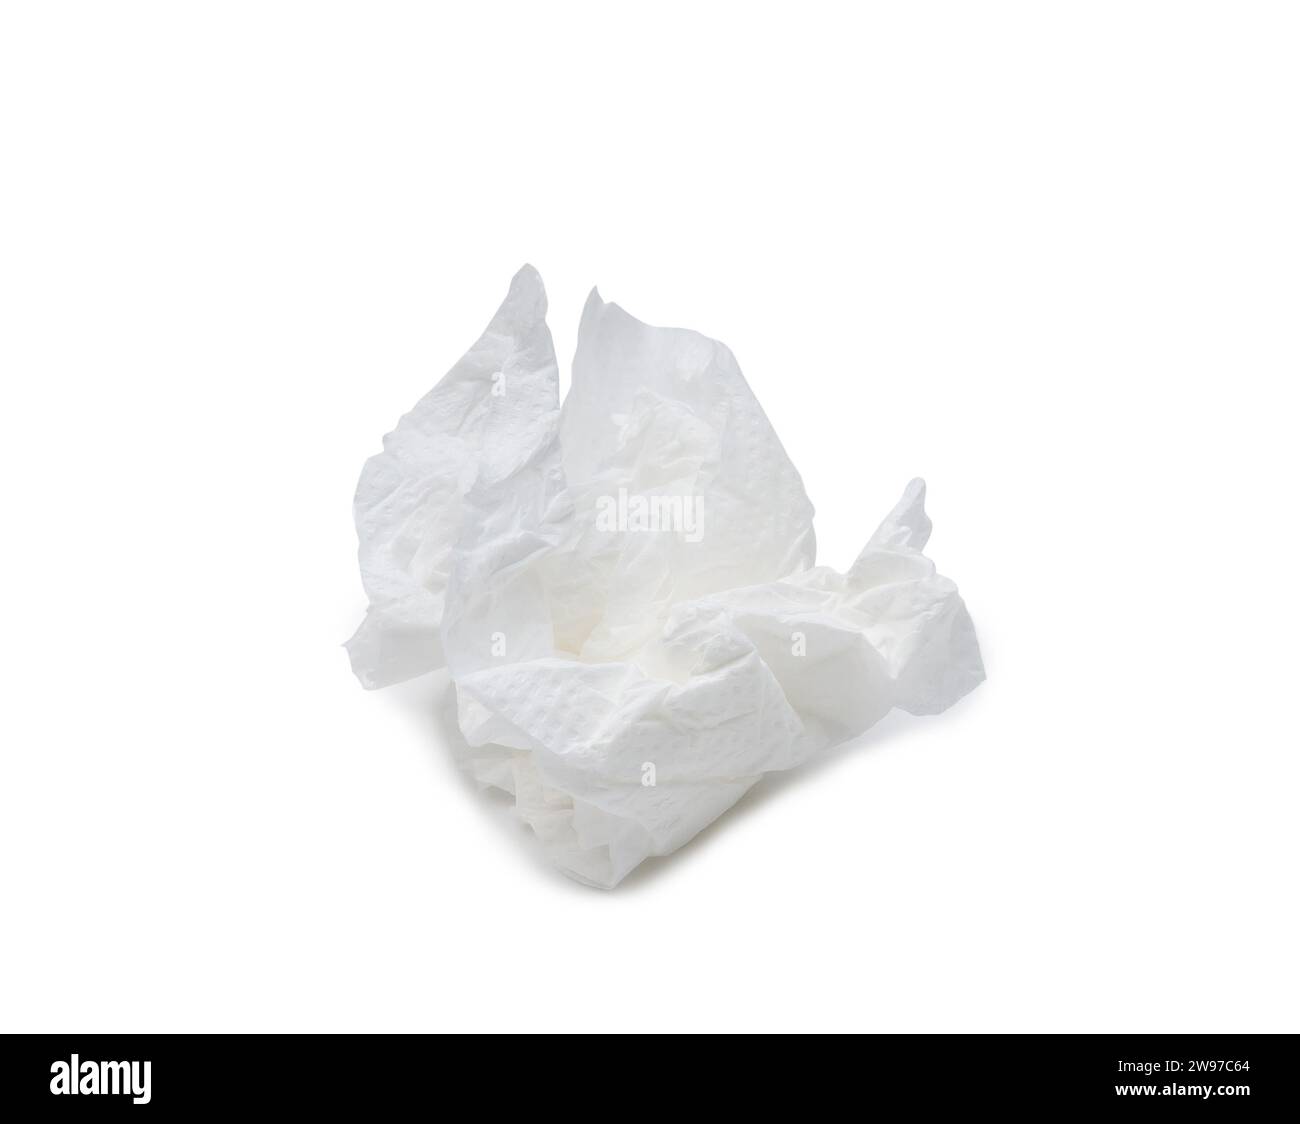 Einzelnes geschraubtes oder zerknittertes Tissue- oder Serviettenpapier nach der Verwendung wird auf weißem Hintergrund mit Beschneidungspfad isoliert. Stockfoto